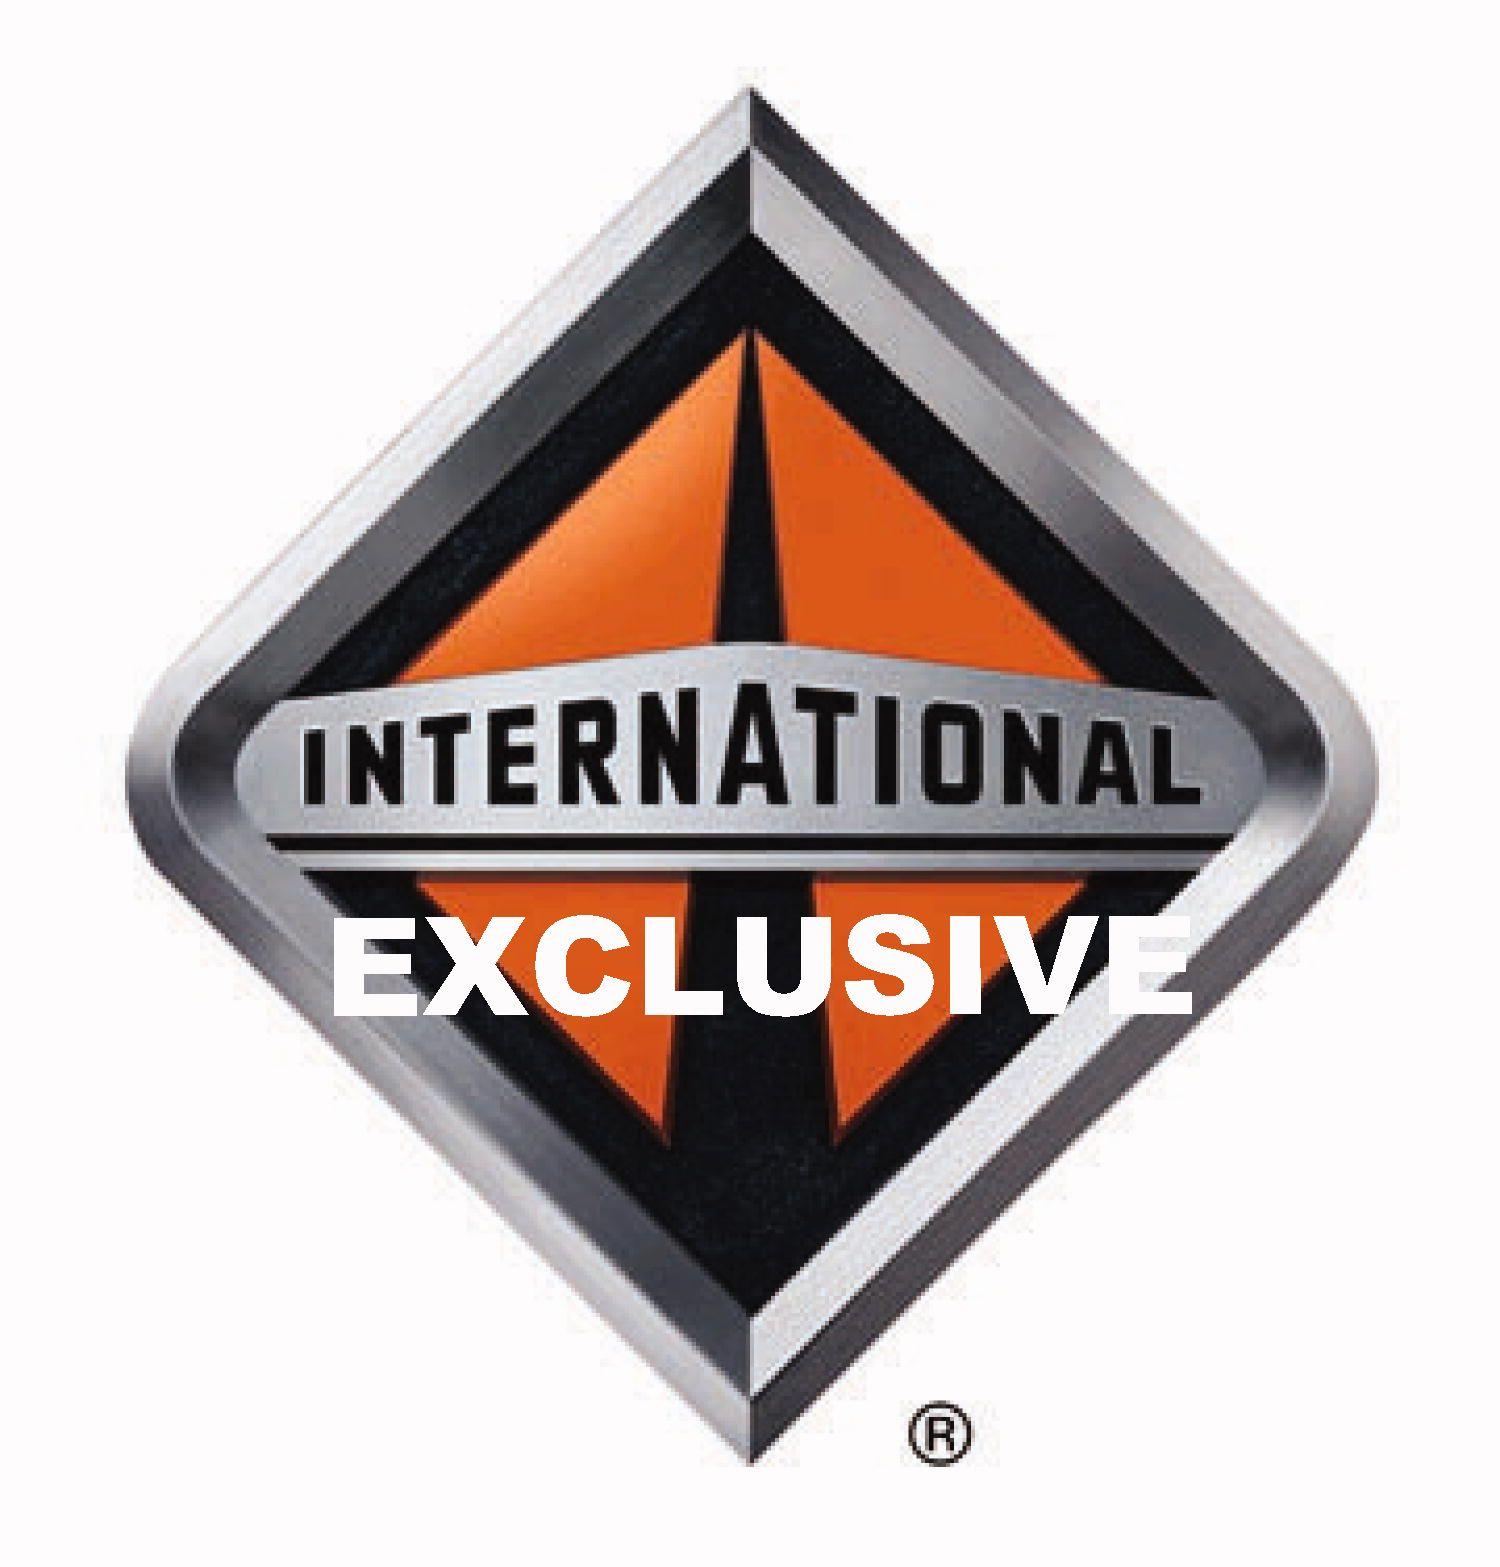 International Diamond Logo - Diamond Logo Copy & Bus News